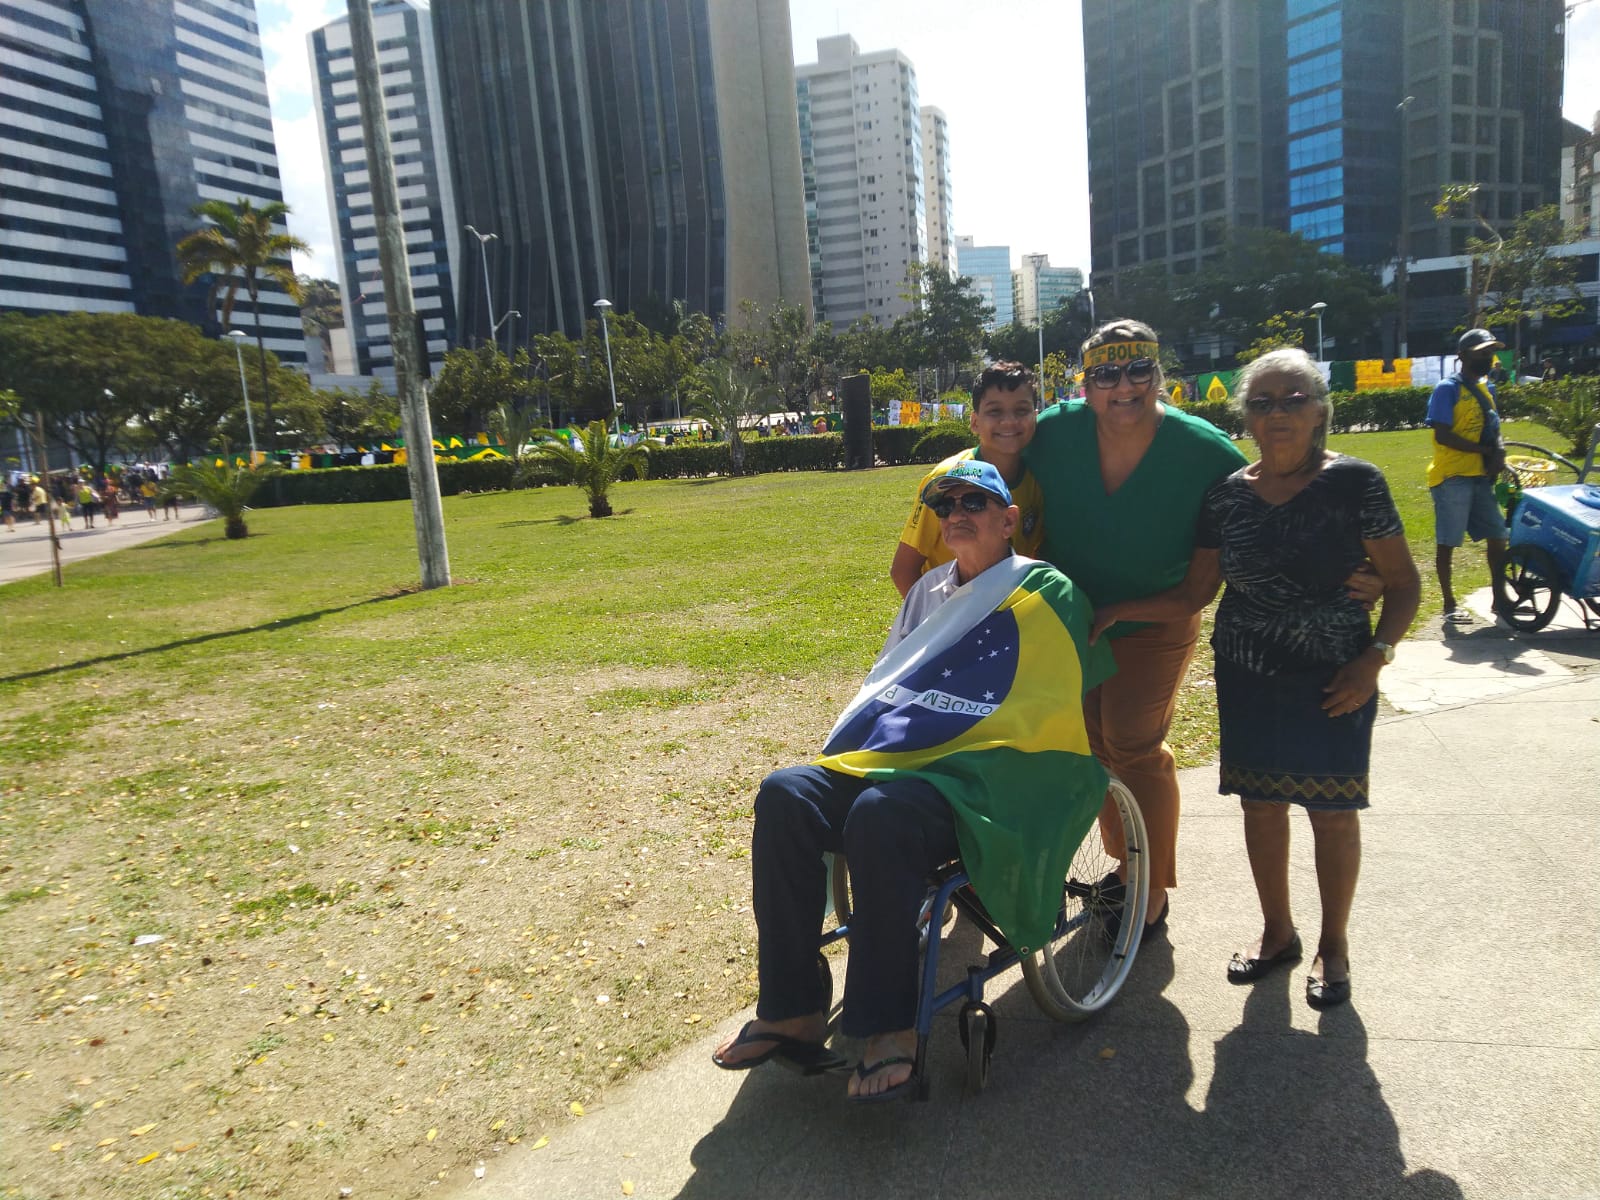 Sandra Carmo, 41, Militar Farmacêutica, trouxe os avós Herundino Resende, 80 e Cesariana Evangelista, 73. Os avós são do Pará